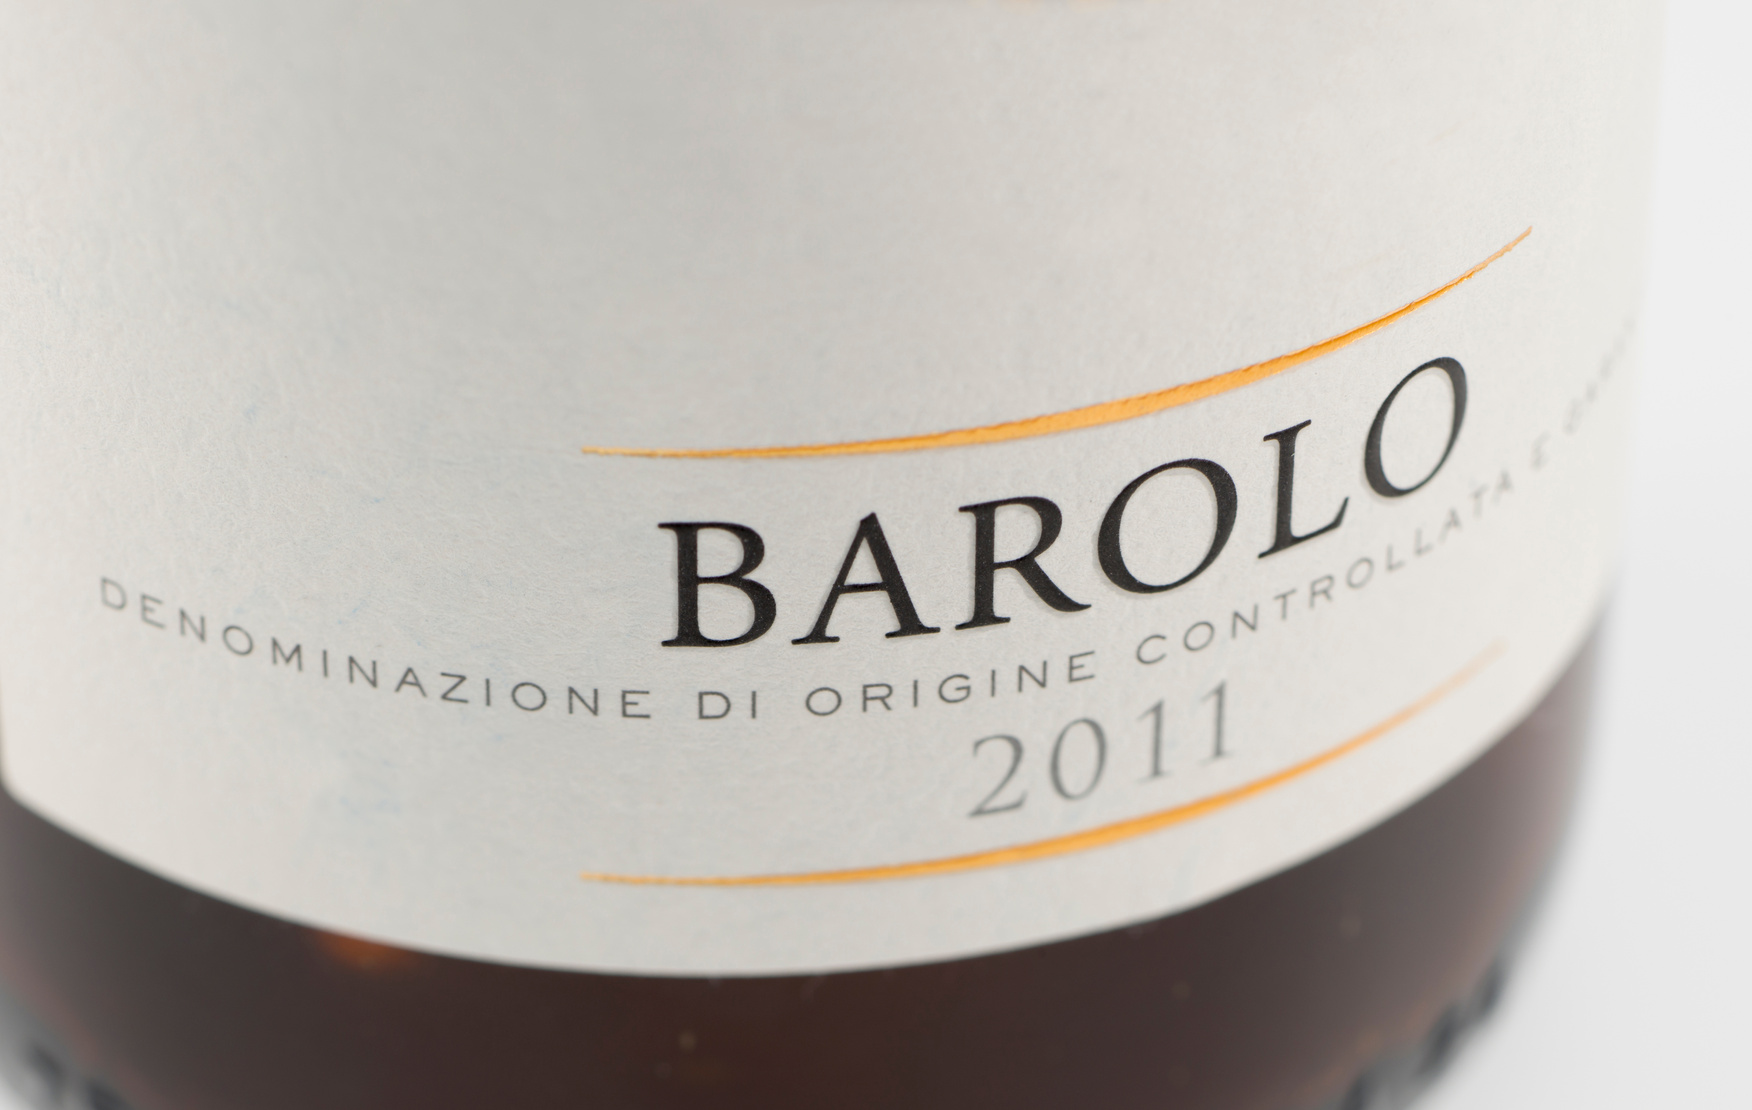 Wine bottle label from Barolo,Peidmont, in Italy